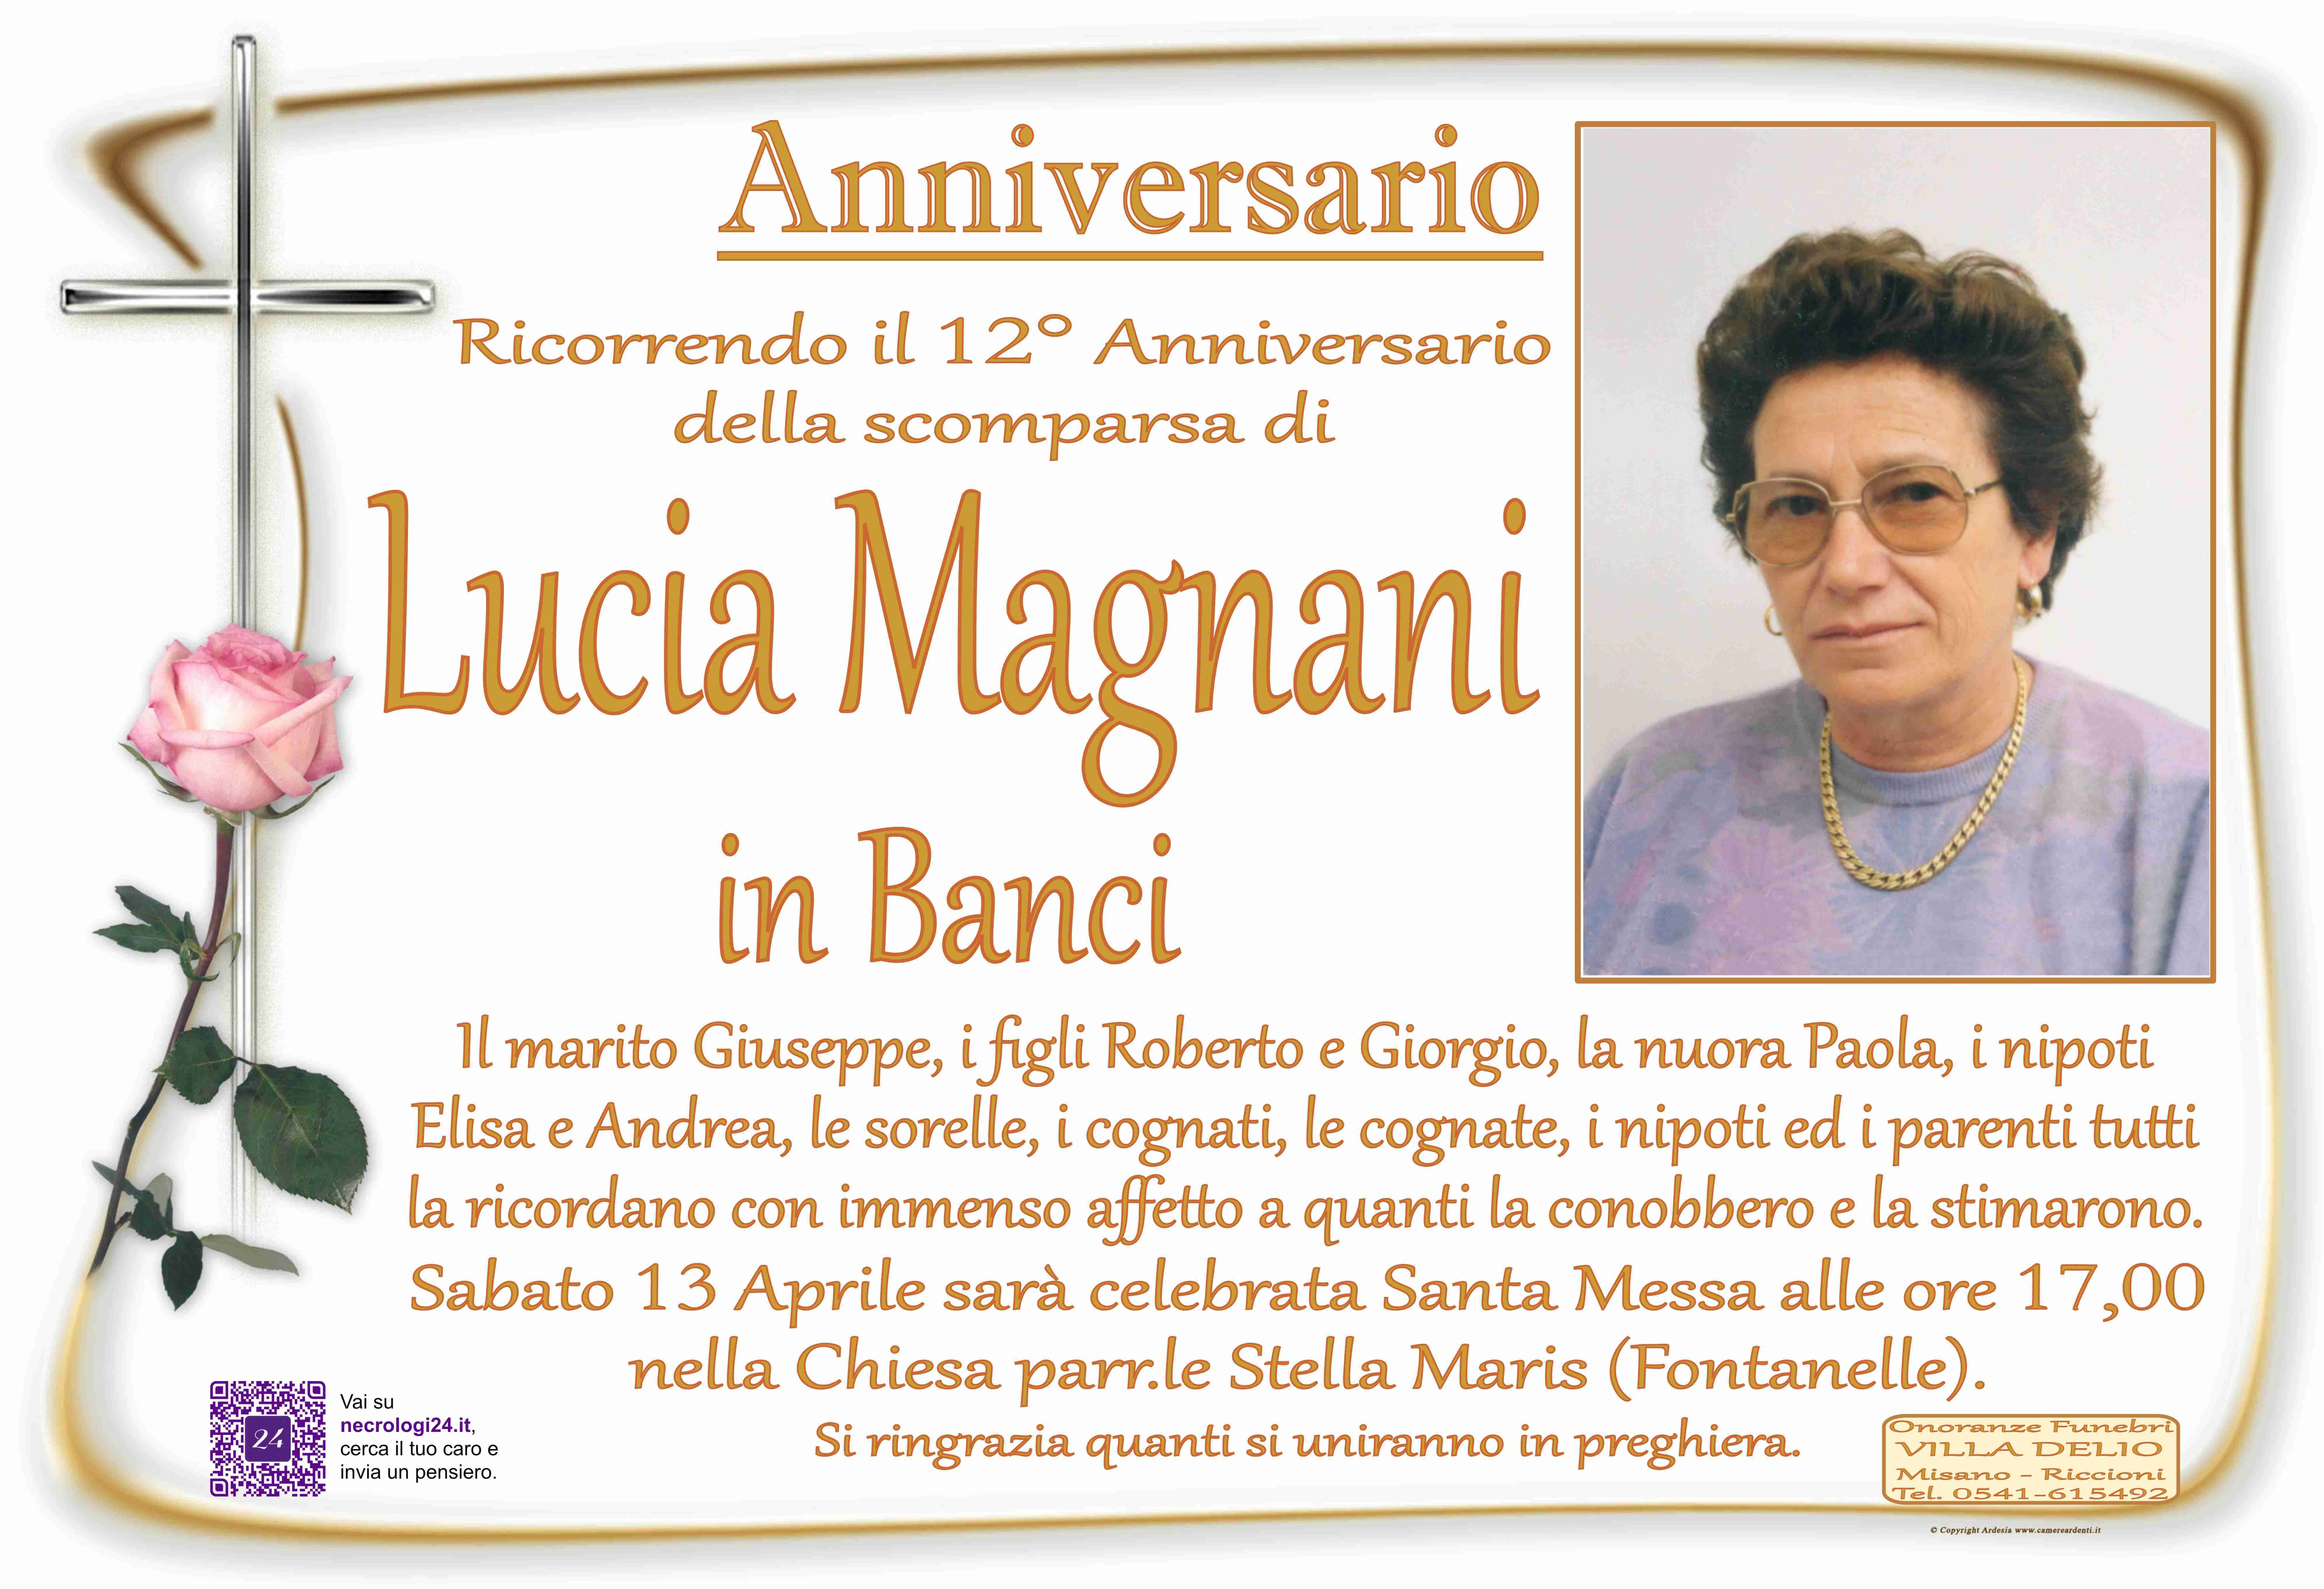 Lucia Magnani in Banci